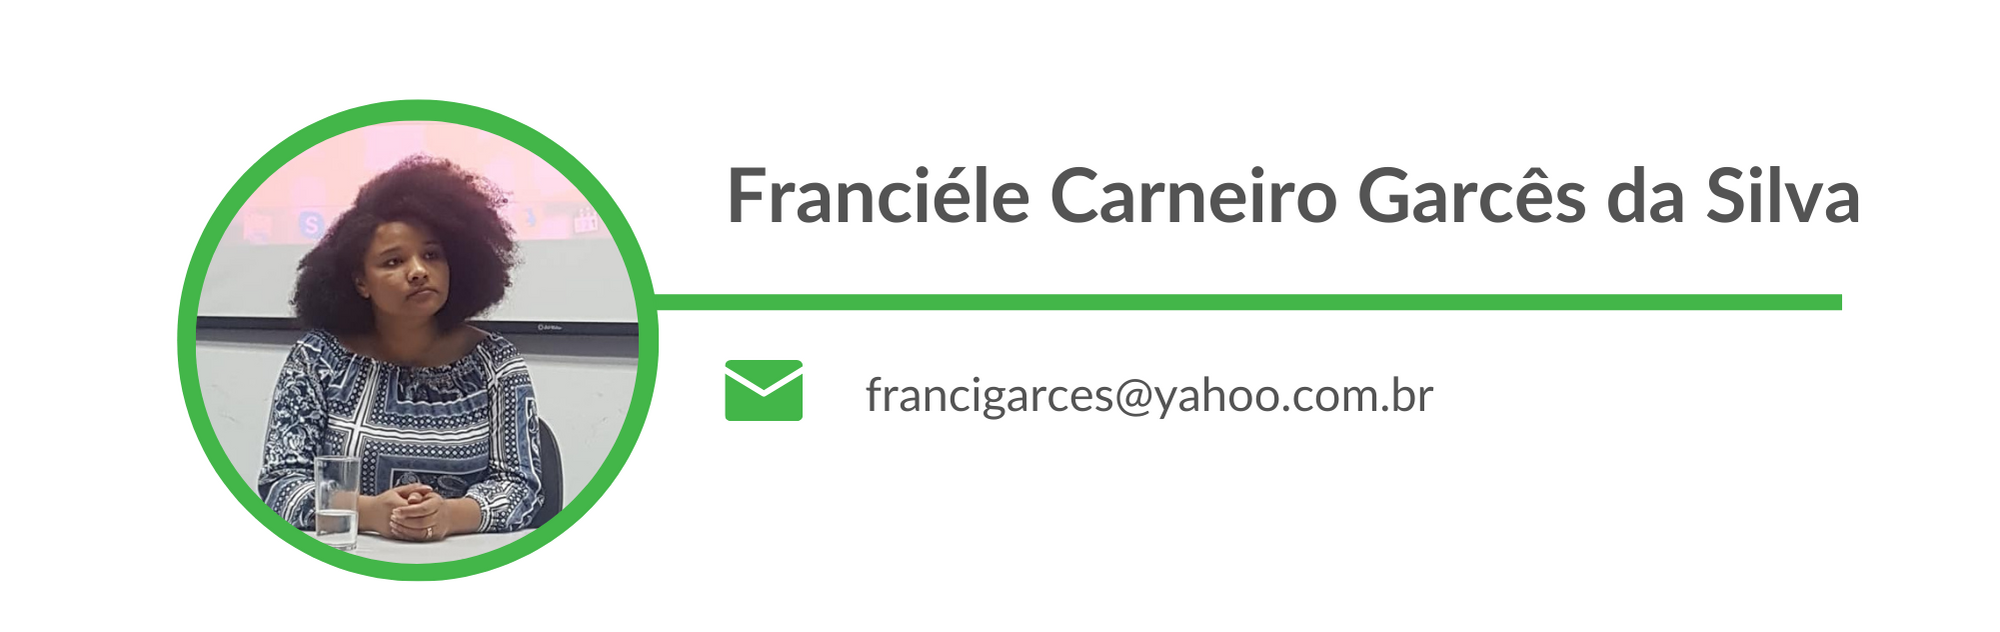 Franciéle Carneiro Garcês da Silva Email: francigarces@yahoo.com.br